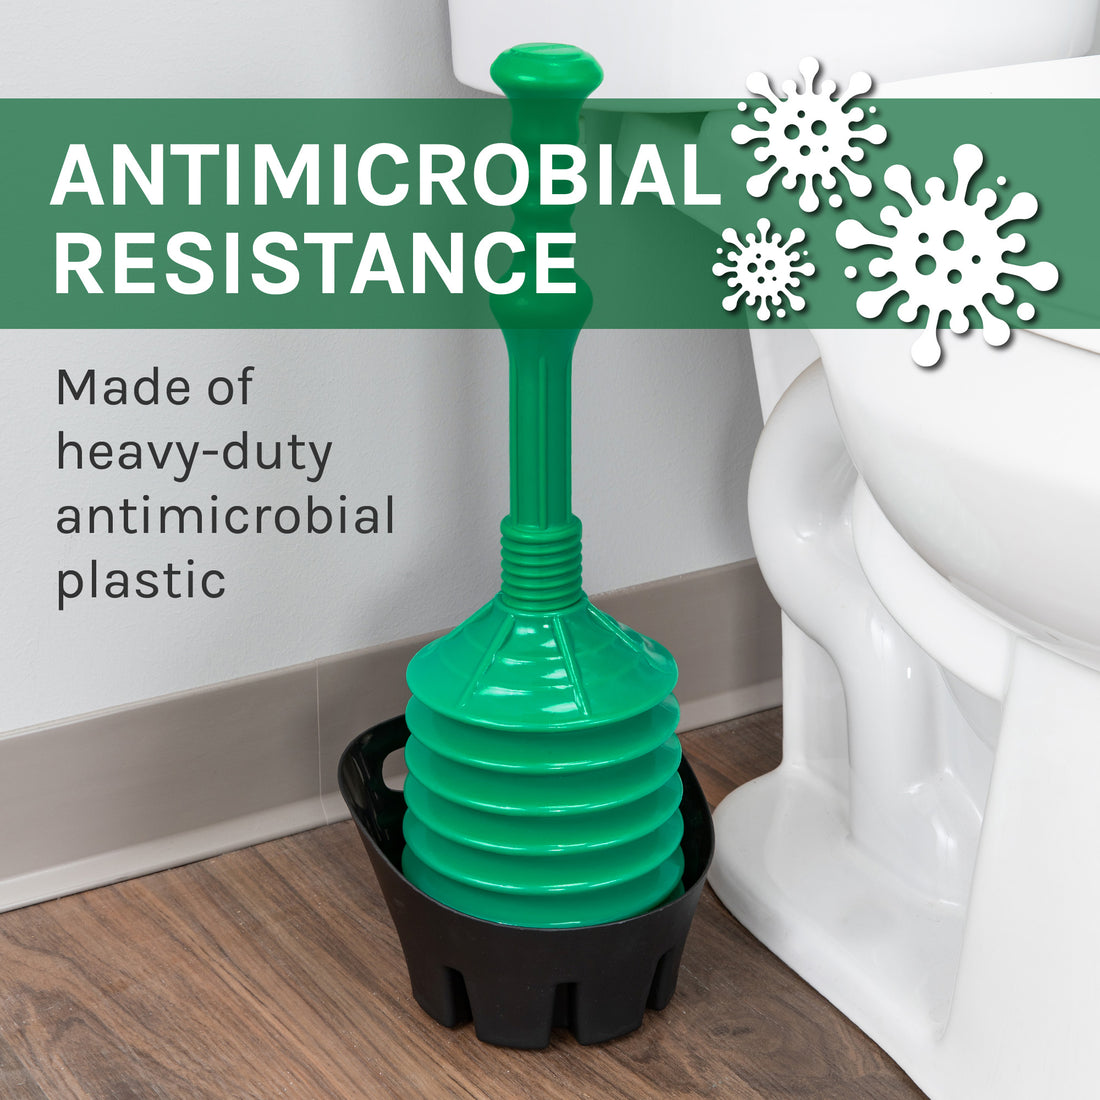 Antimicrobial Bellows Accordion Toilet Plunger with Black Storage Tray (Green) - Utility sinks vanites Tehila